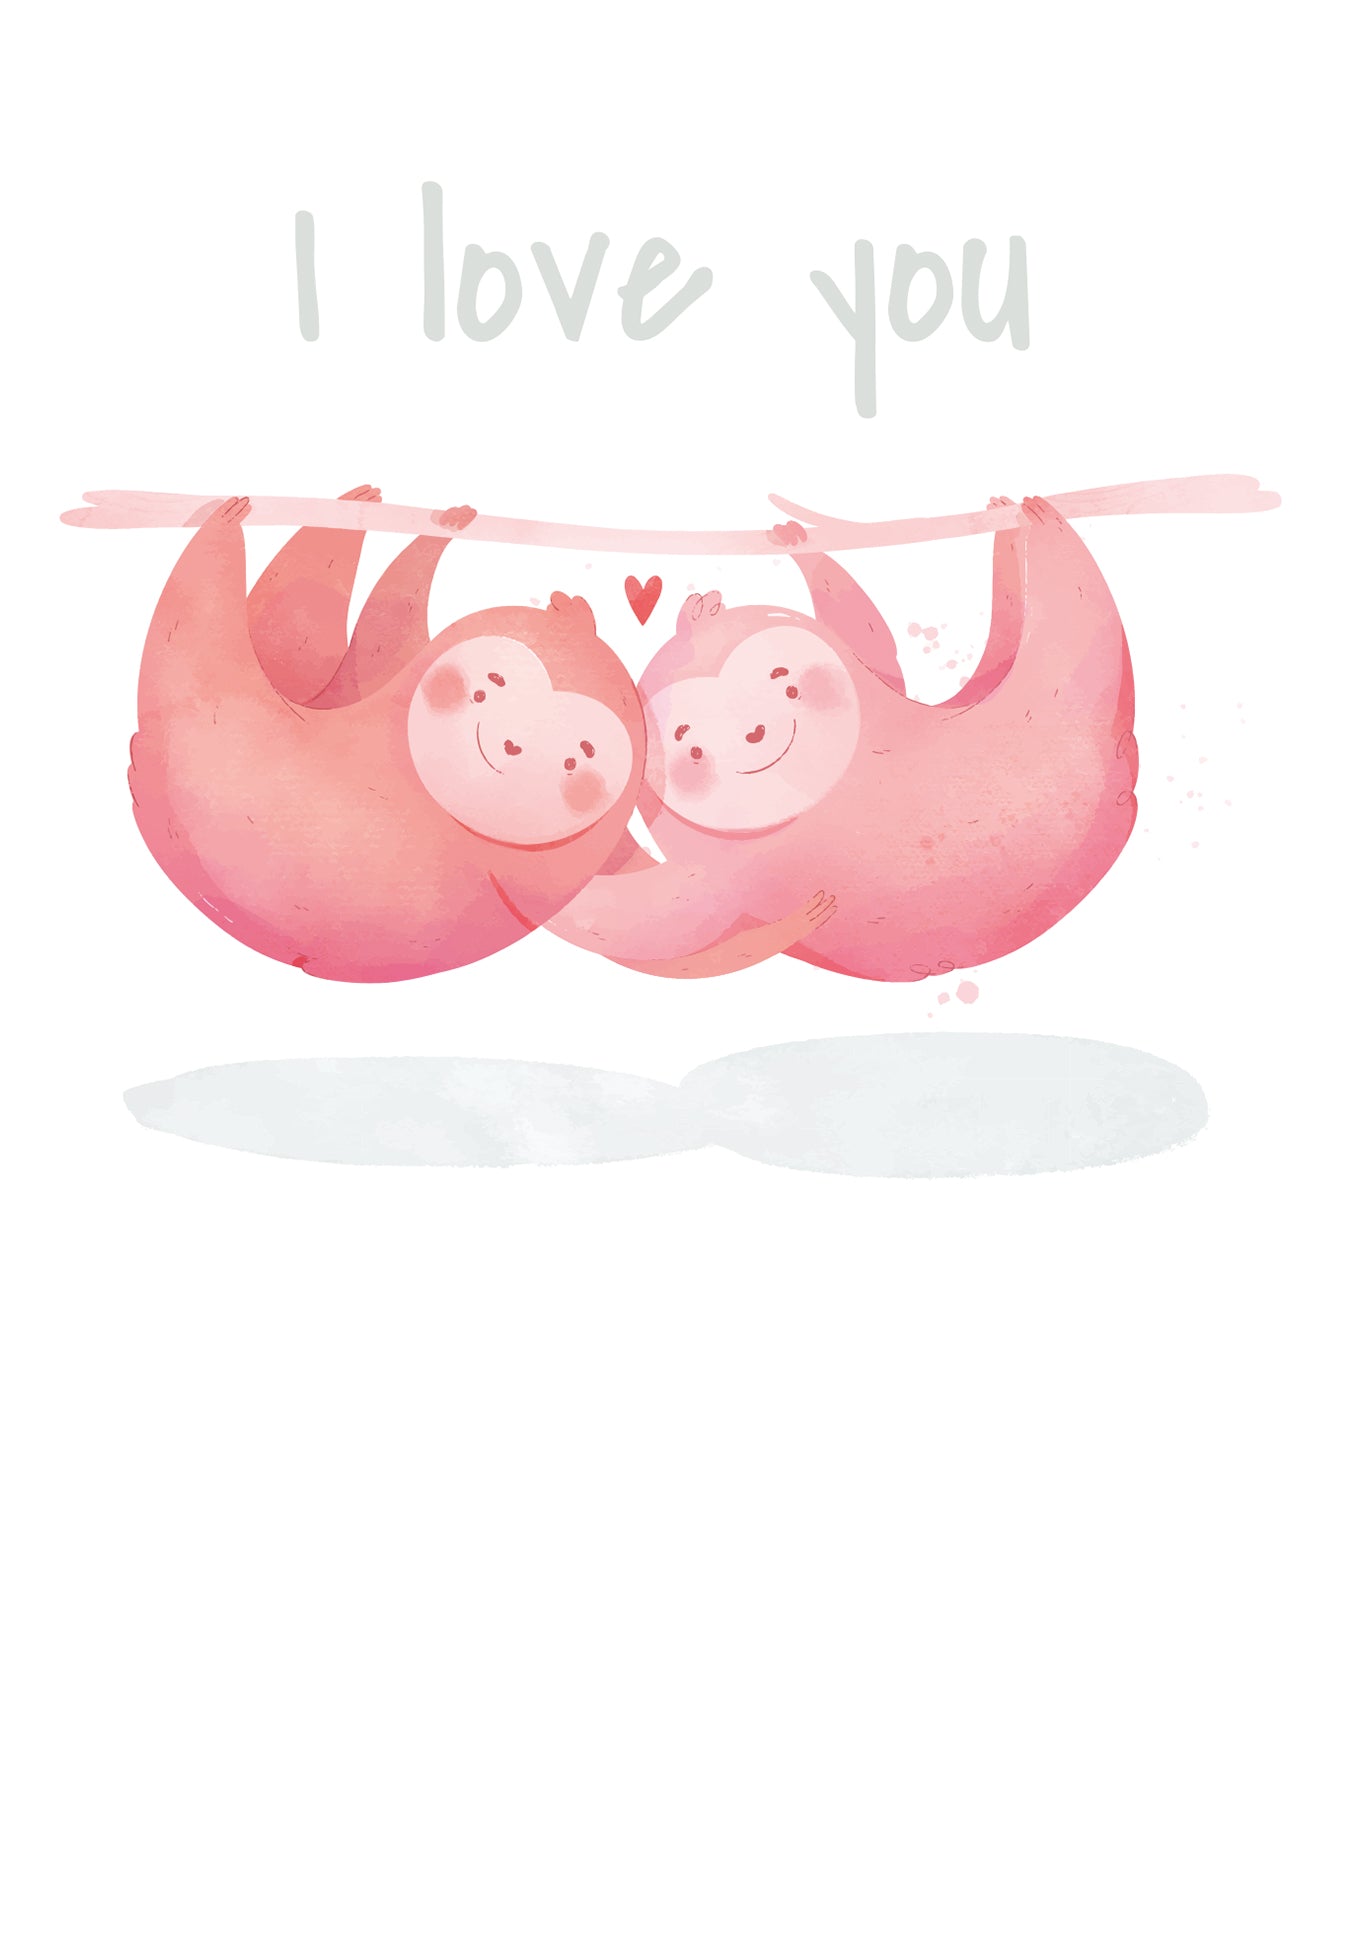 I love you - Sloths (Grado di valore)